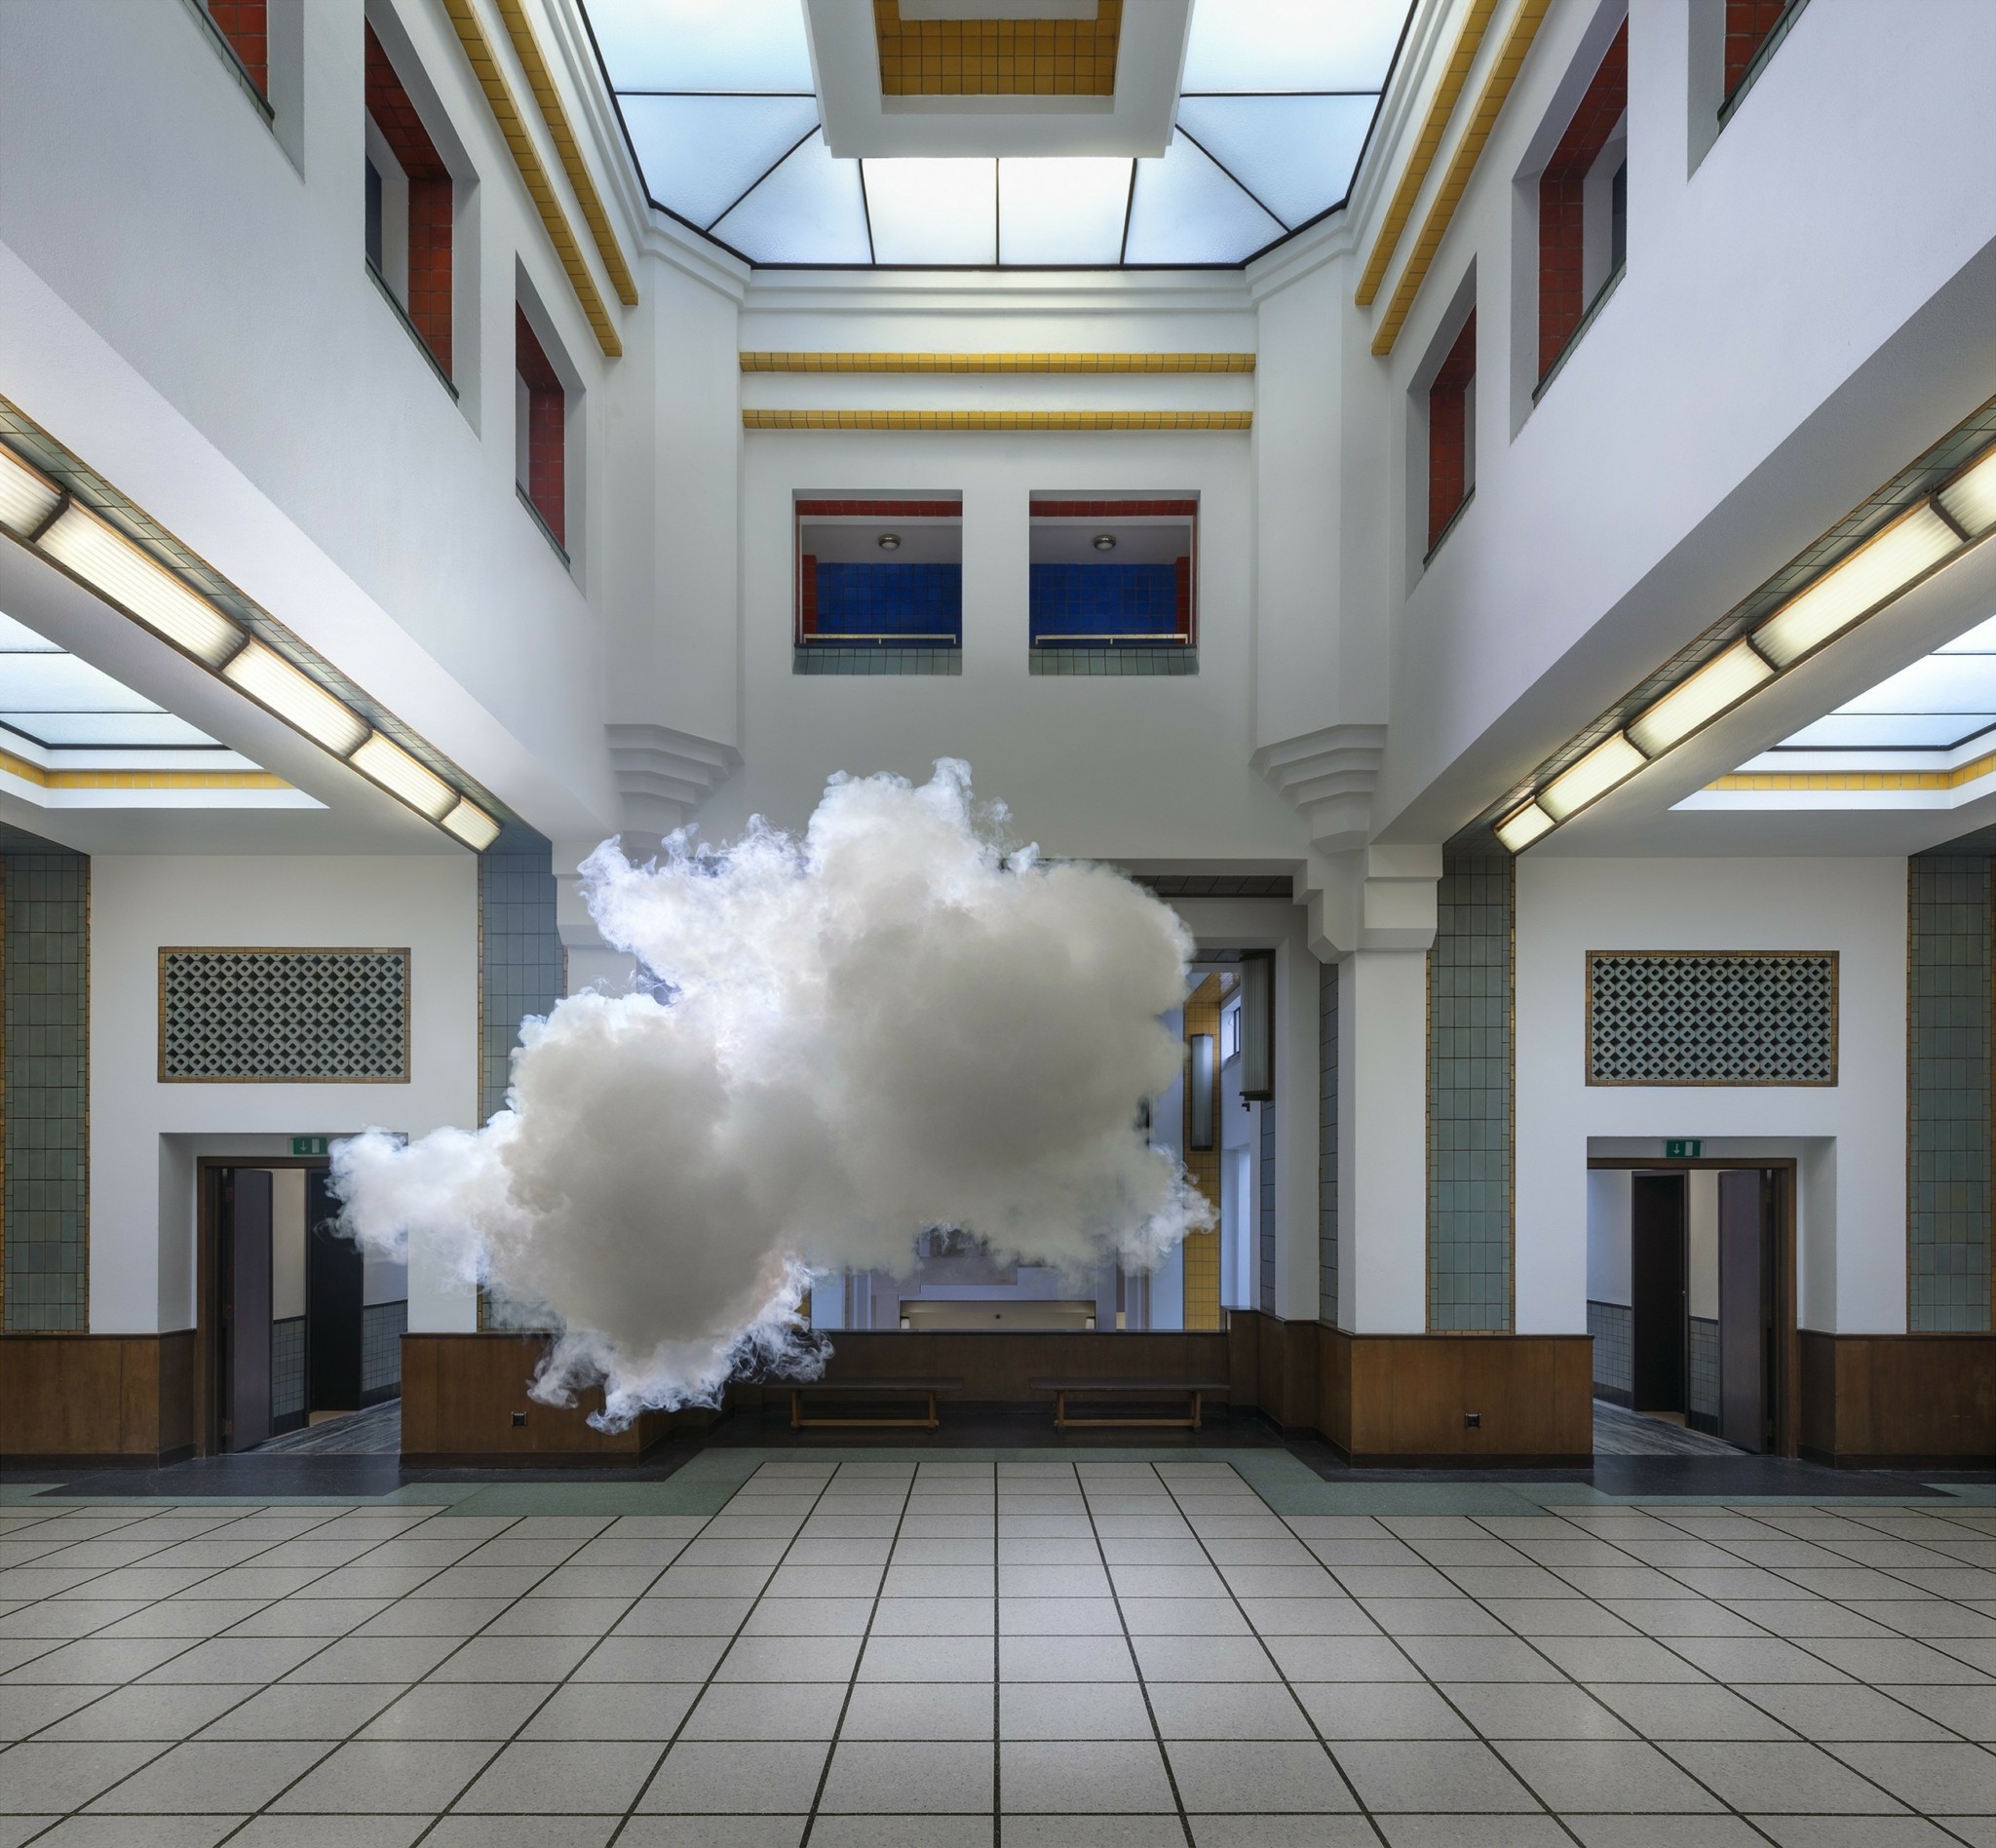 Πώς ένας επίμονος καλλιτέχνης δημιουργεί τέλεια σύννεφα και τα εκθέτει για λίγα δευτερόλεπτα